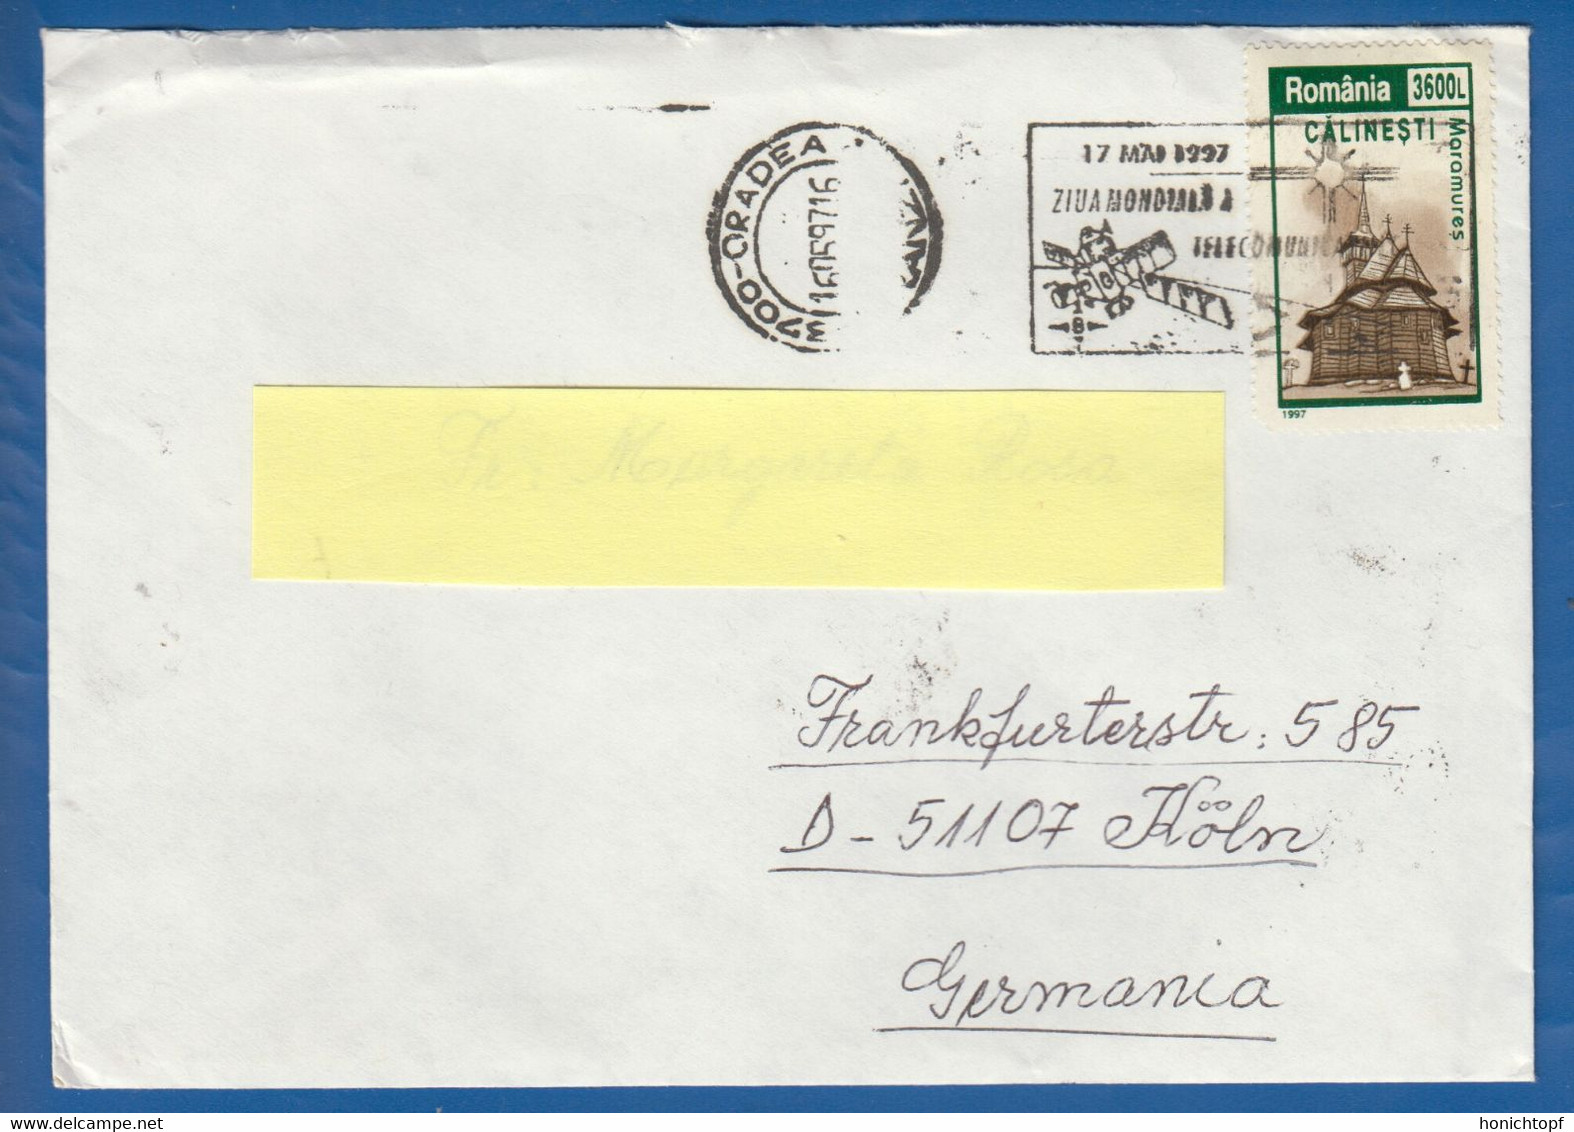 Rumänien; Brief Infla; 1997; Oradea; Romania - Lettres & Documents